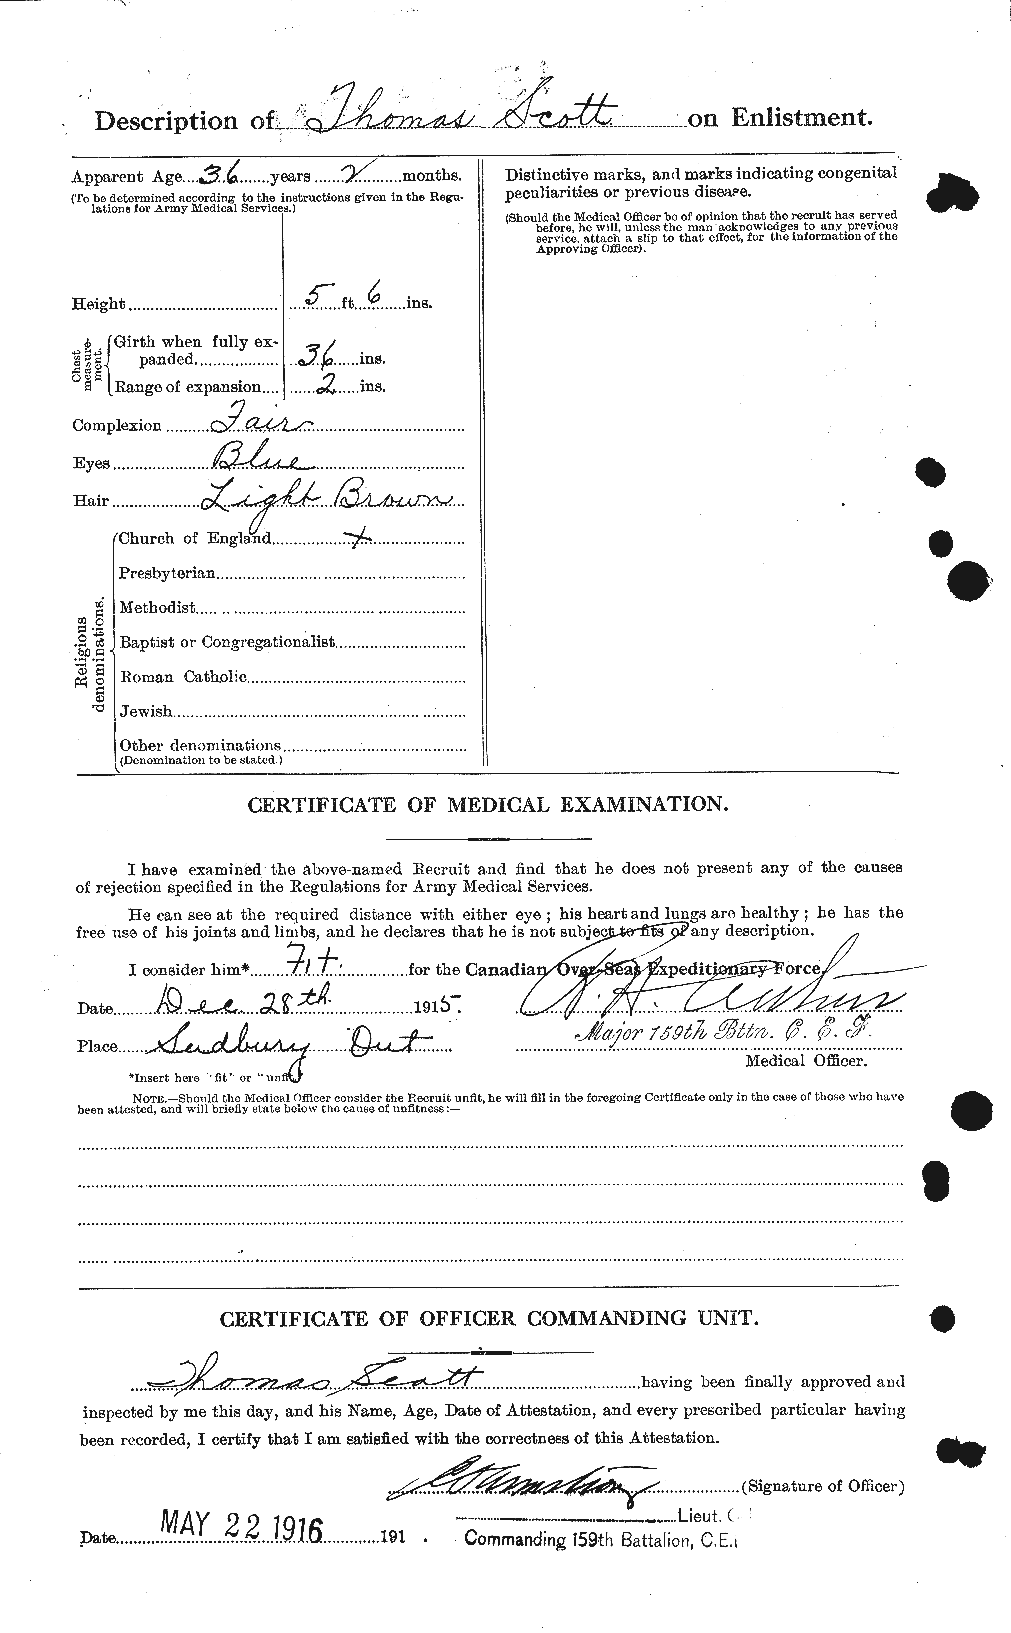 Dossiers du Personnel de la Première Guerre mondiale - CEC 088531b